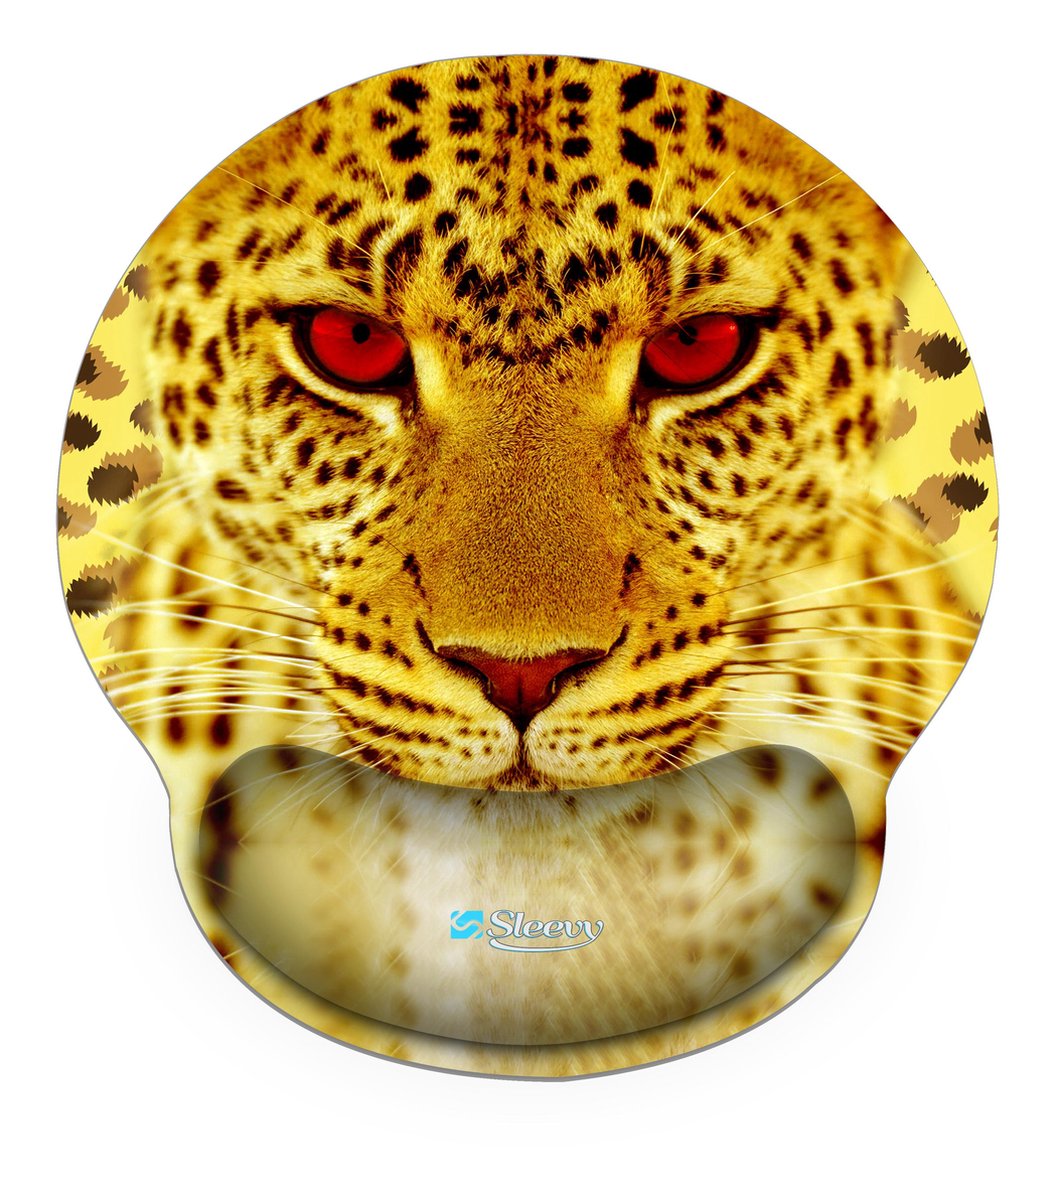 muismat polssteun cheeta - Sleevy - mousepad - Collectie 100+ designs